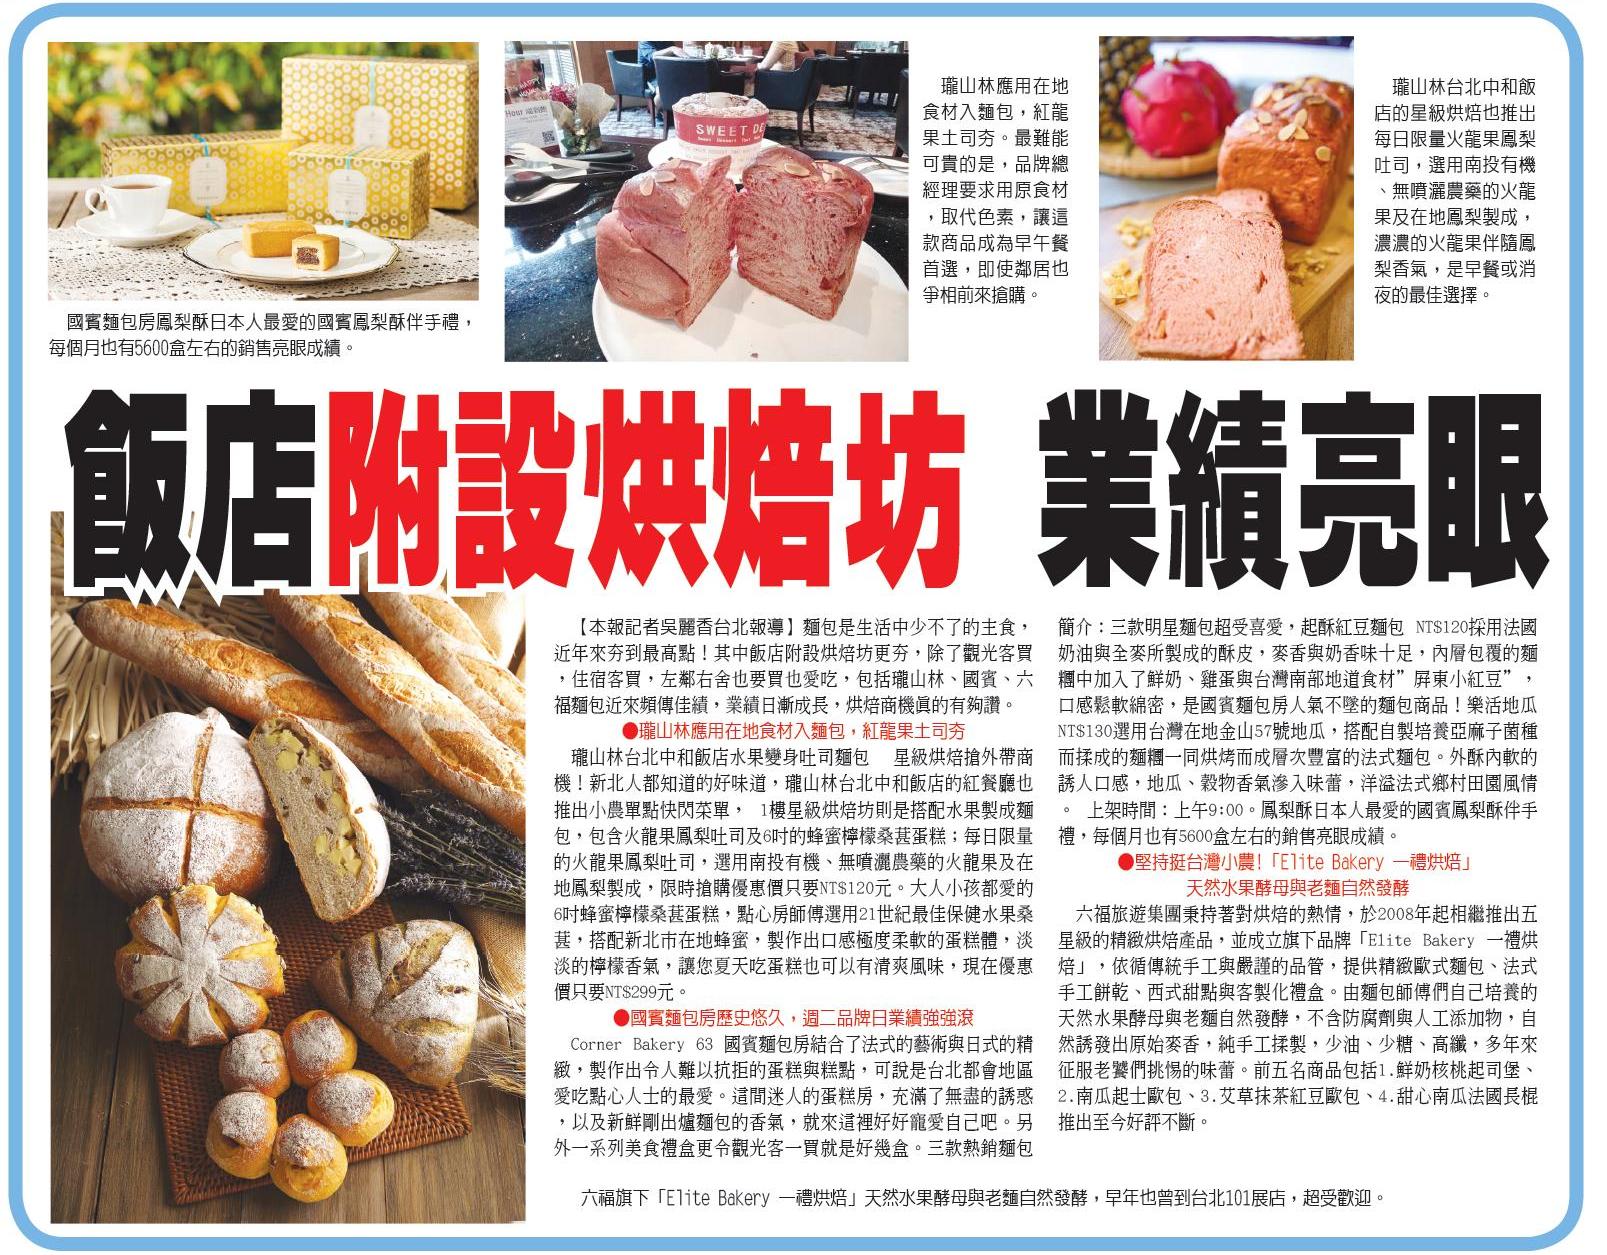 「Elite Bakery 一禮烘焙」堅持力挺台灣小農，天然水果酵母與老麵自然發酵